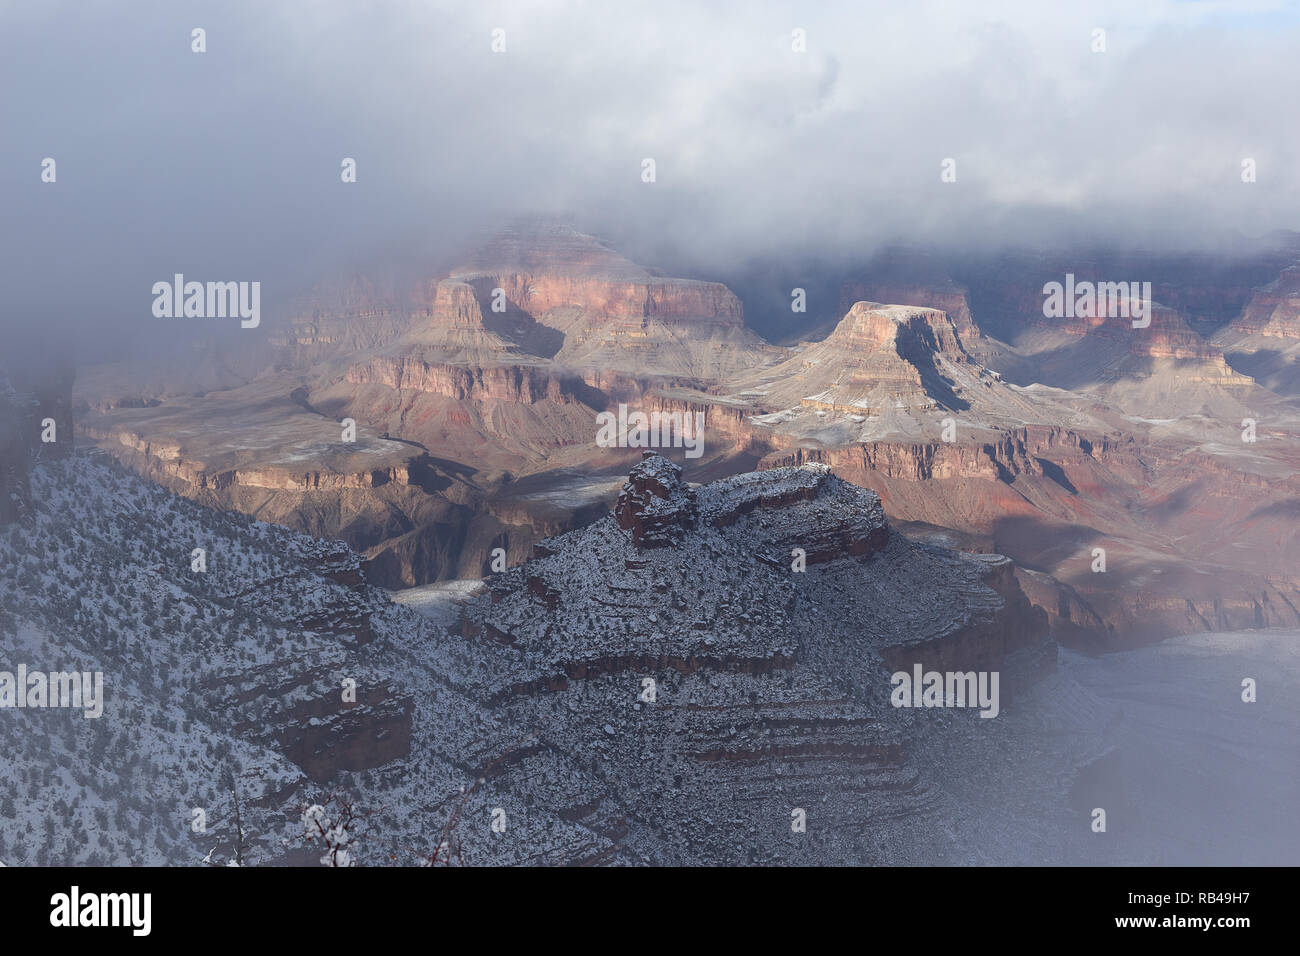 La luce del sole si apre attraverso le nuvole mentre una tempesta invernale della neve inizia a sgombra sul versante sud del Grand Canyon nel Parco Nazionale del Grand Canyon, Arizona, Stati Uniti Foto Stock